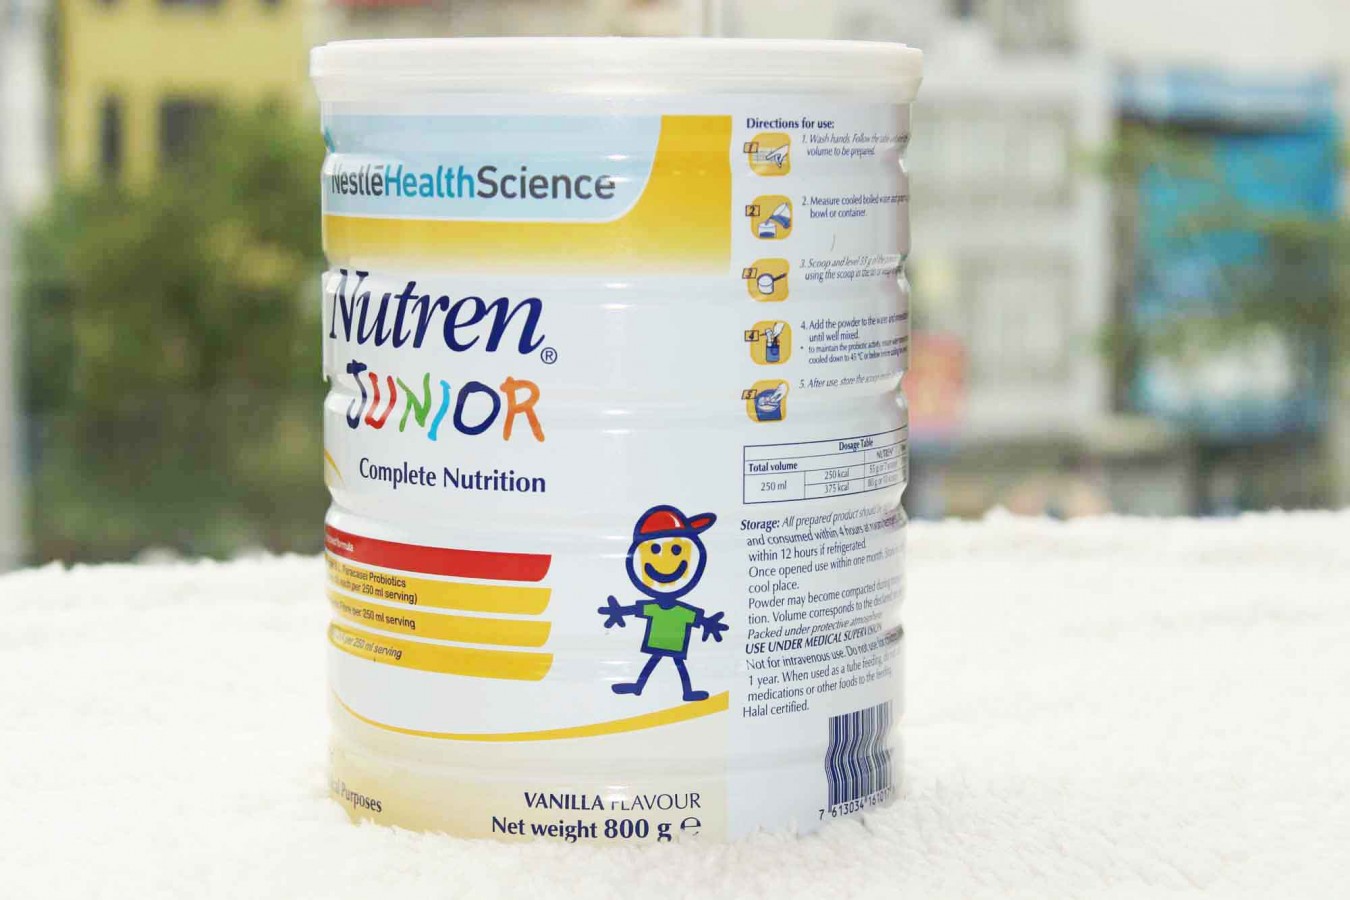 Sữa Nutren Junior Thụy Sỹ Cho Trẻ Từ 1 Đến 10 Tuổi